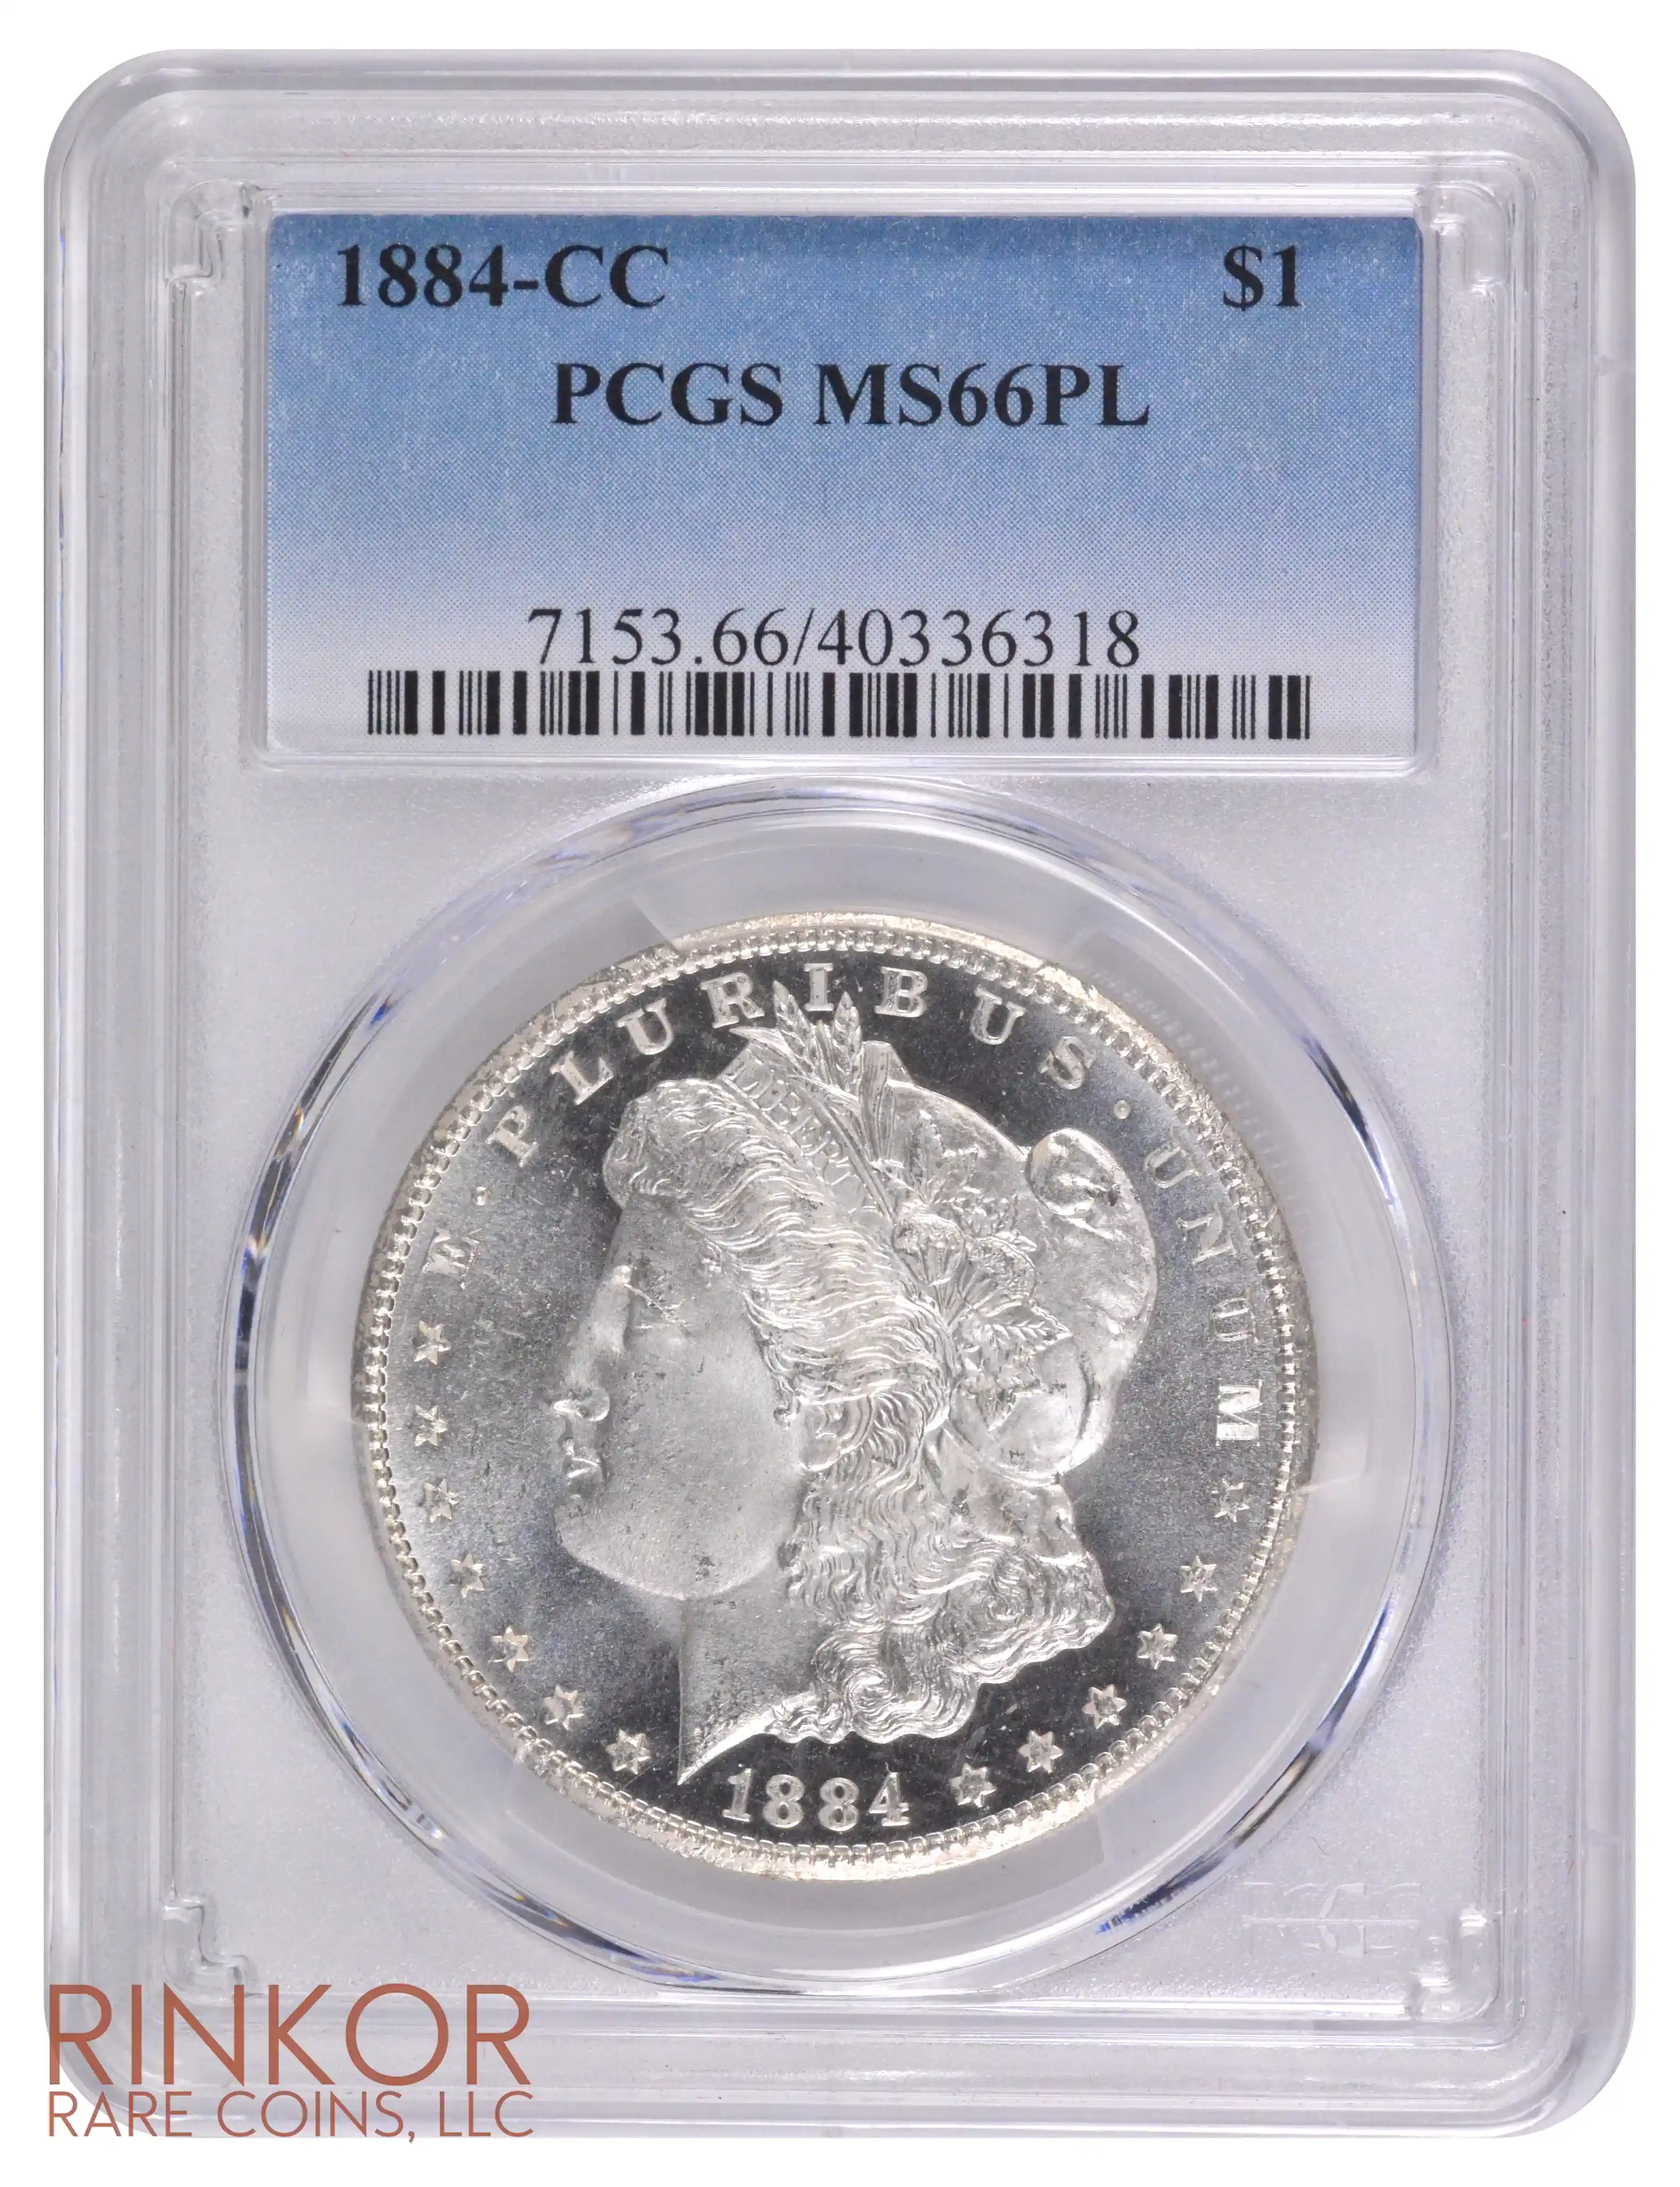 1884-CC $1 PCGS MS 66 PL